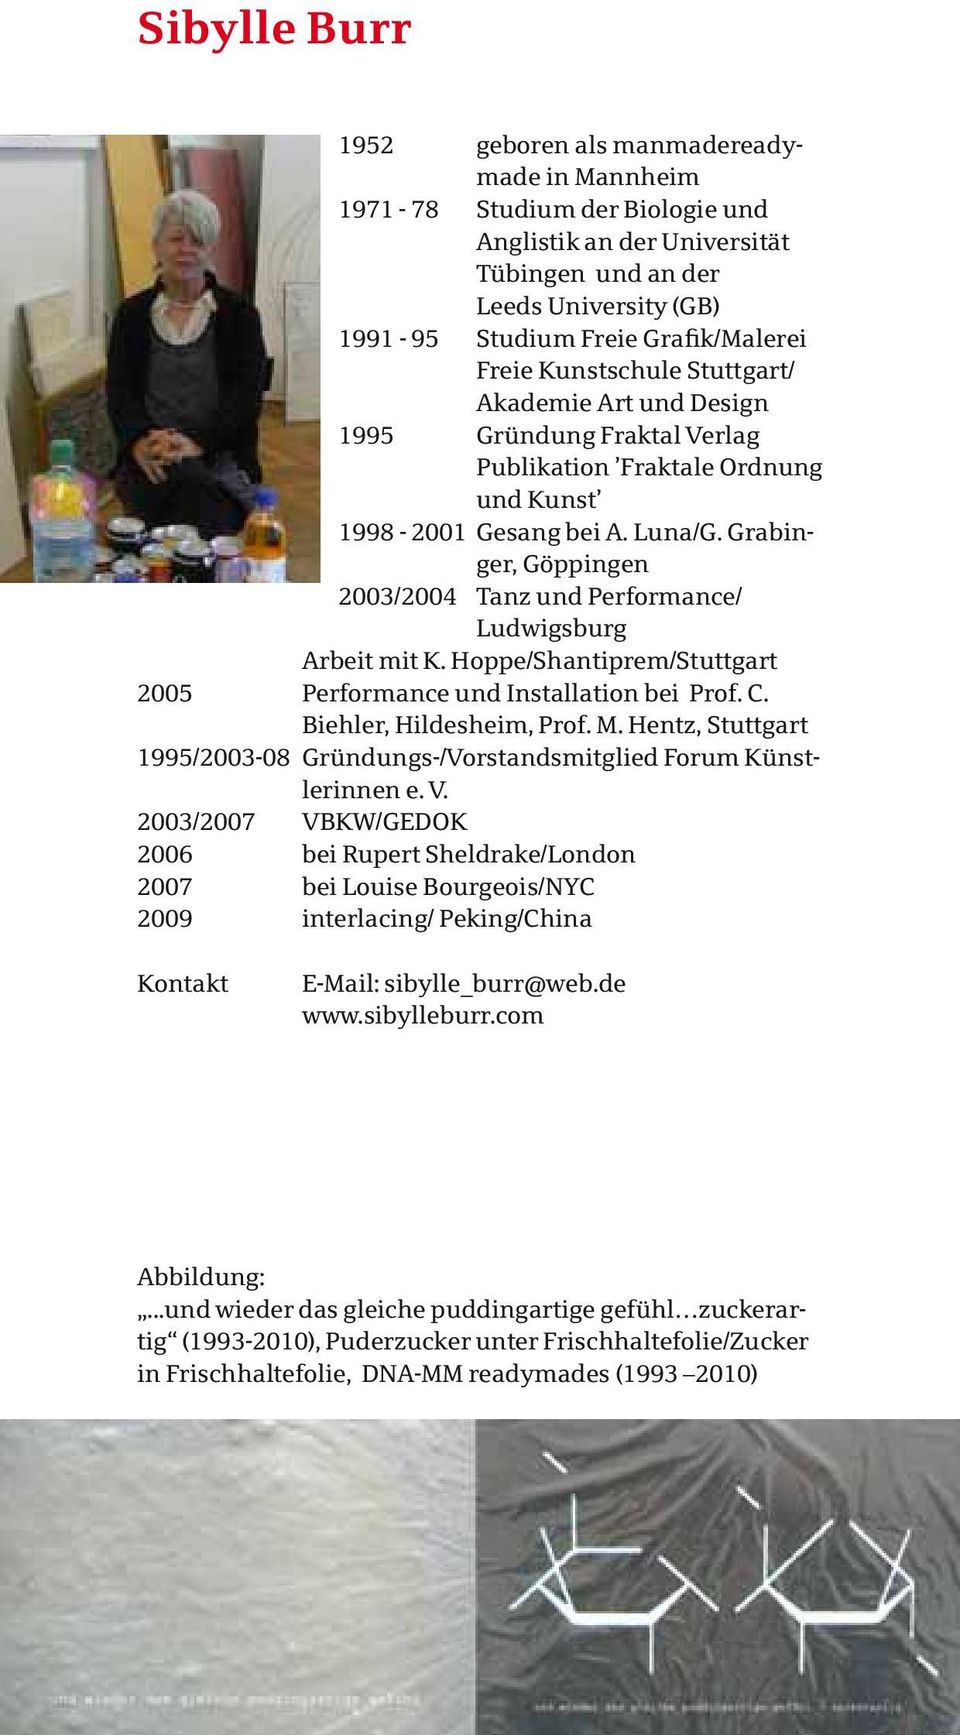 Grabinger, Göppingen 2003/2004 Tanz und Performance/ Ludwigsburg Arbeit mit K. Hoppe/Shantiprem/Stuttgart 2005 Performance und Installation bei Prof. C. Biehler, Hildesheim, Prof. M.